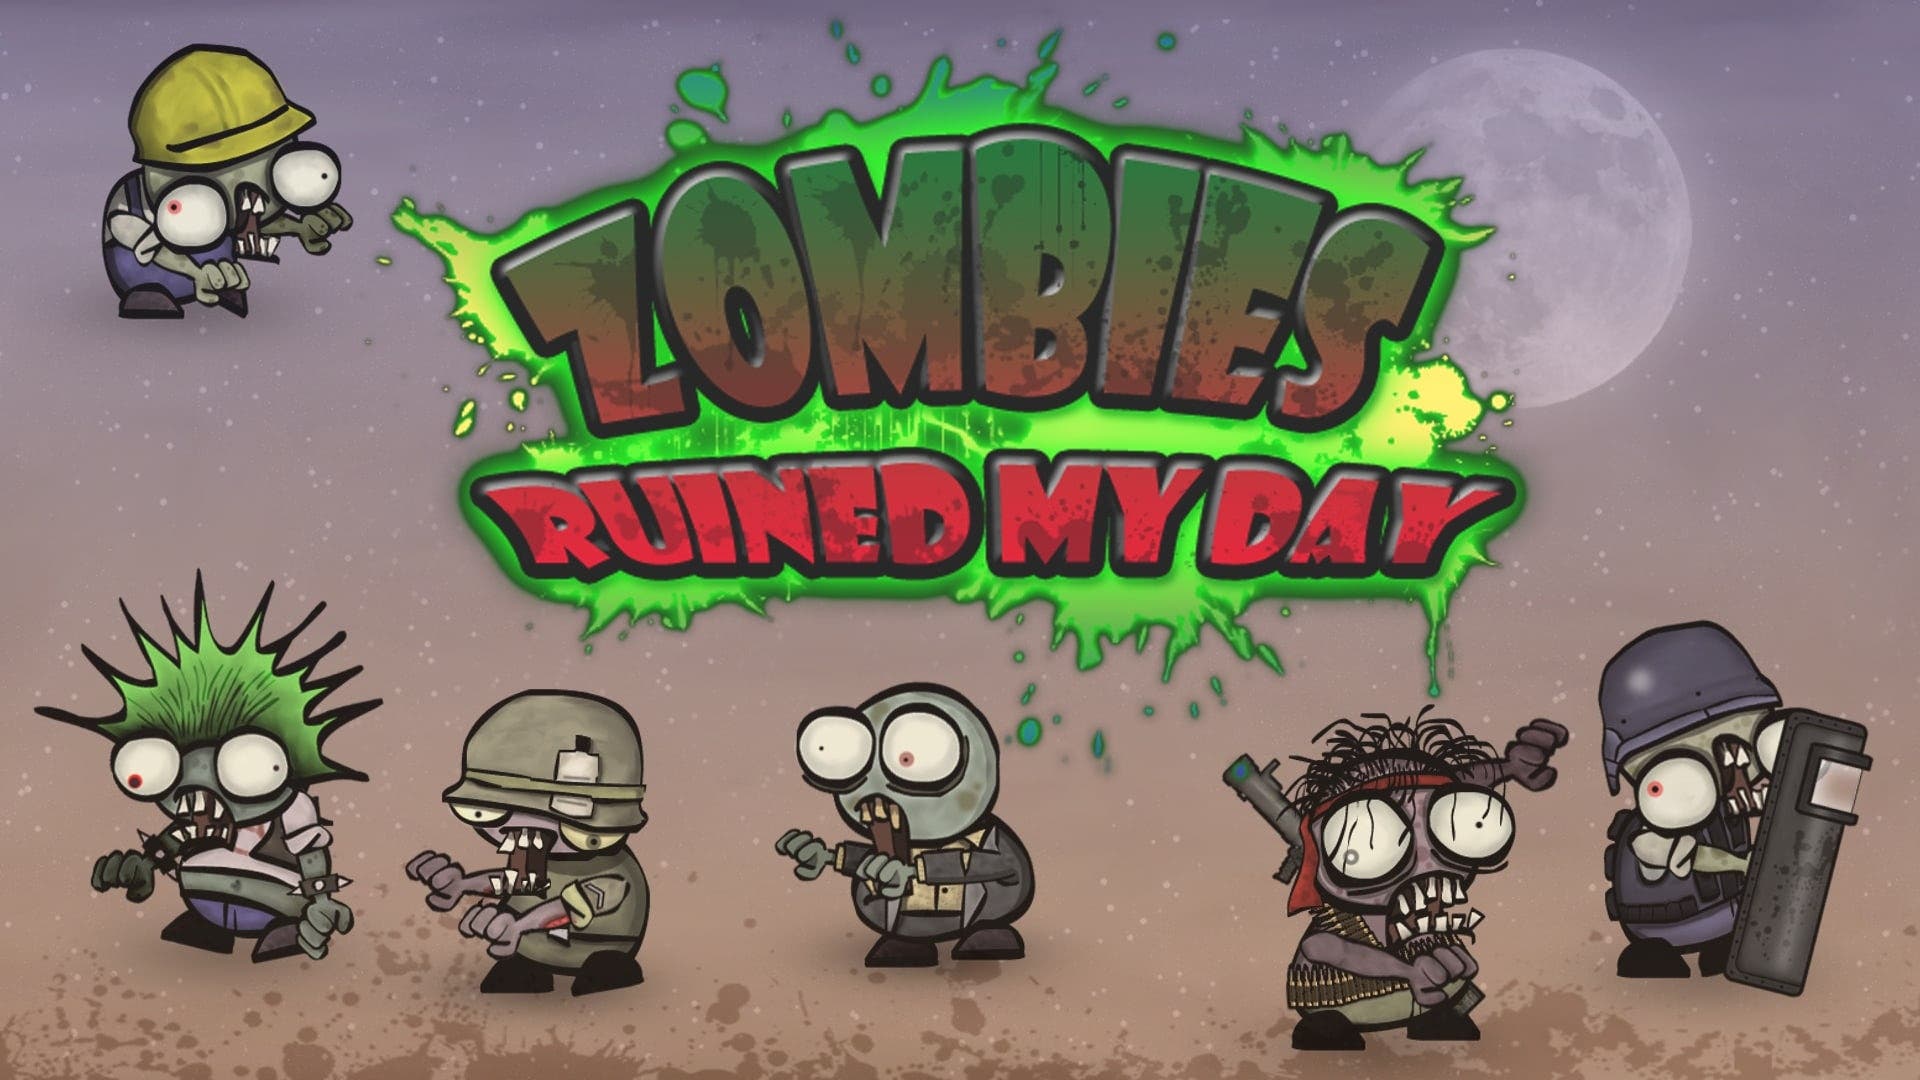 Zombies ruined my day llegará a Nintendo Switch el 4 de julio